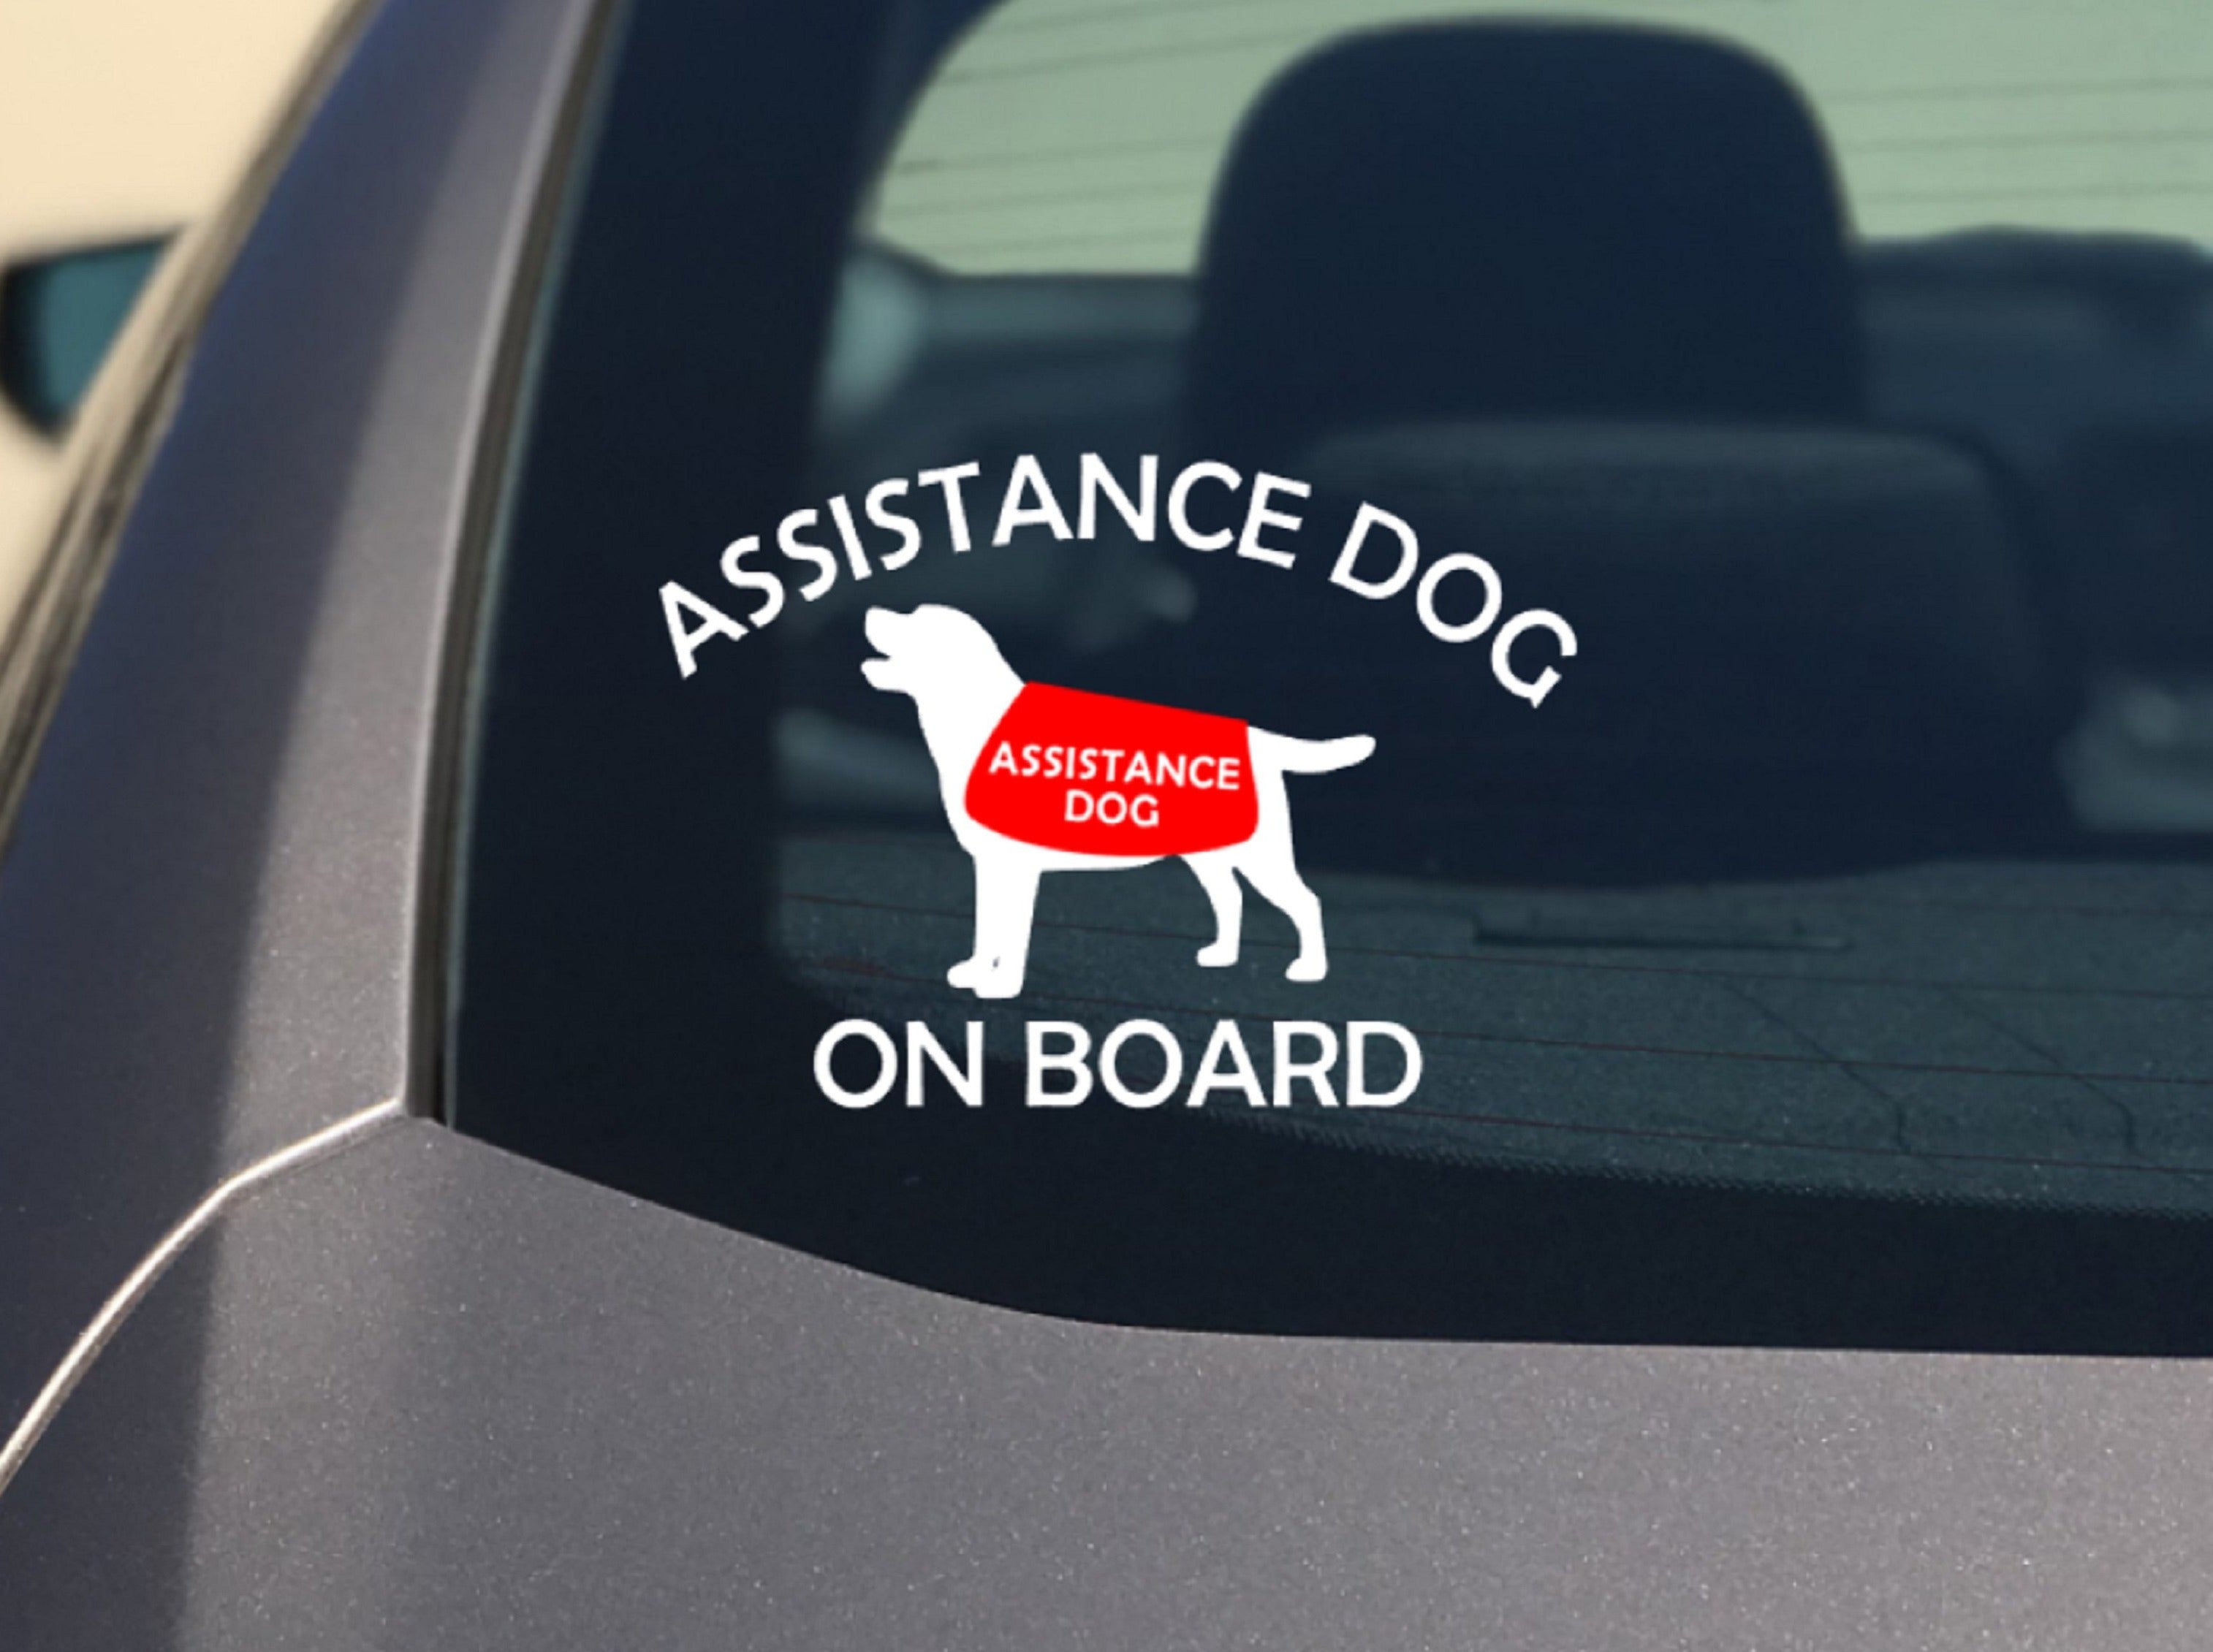 Assistance Dog on Board Car Sticker - My Crafty Dog